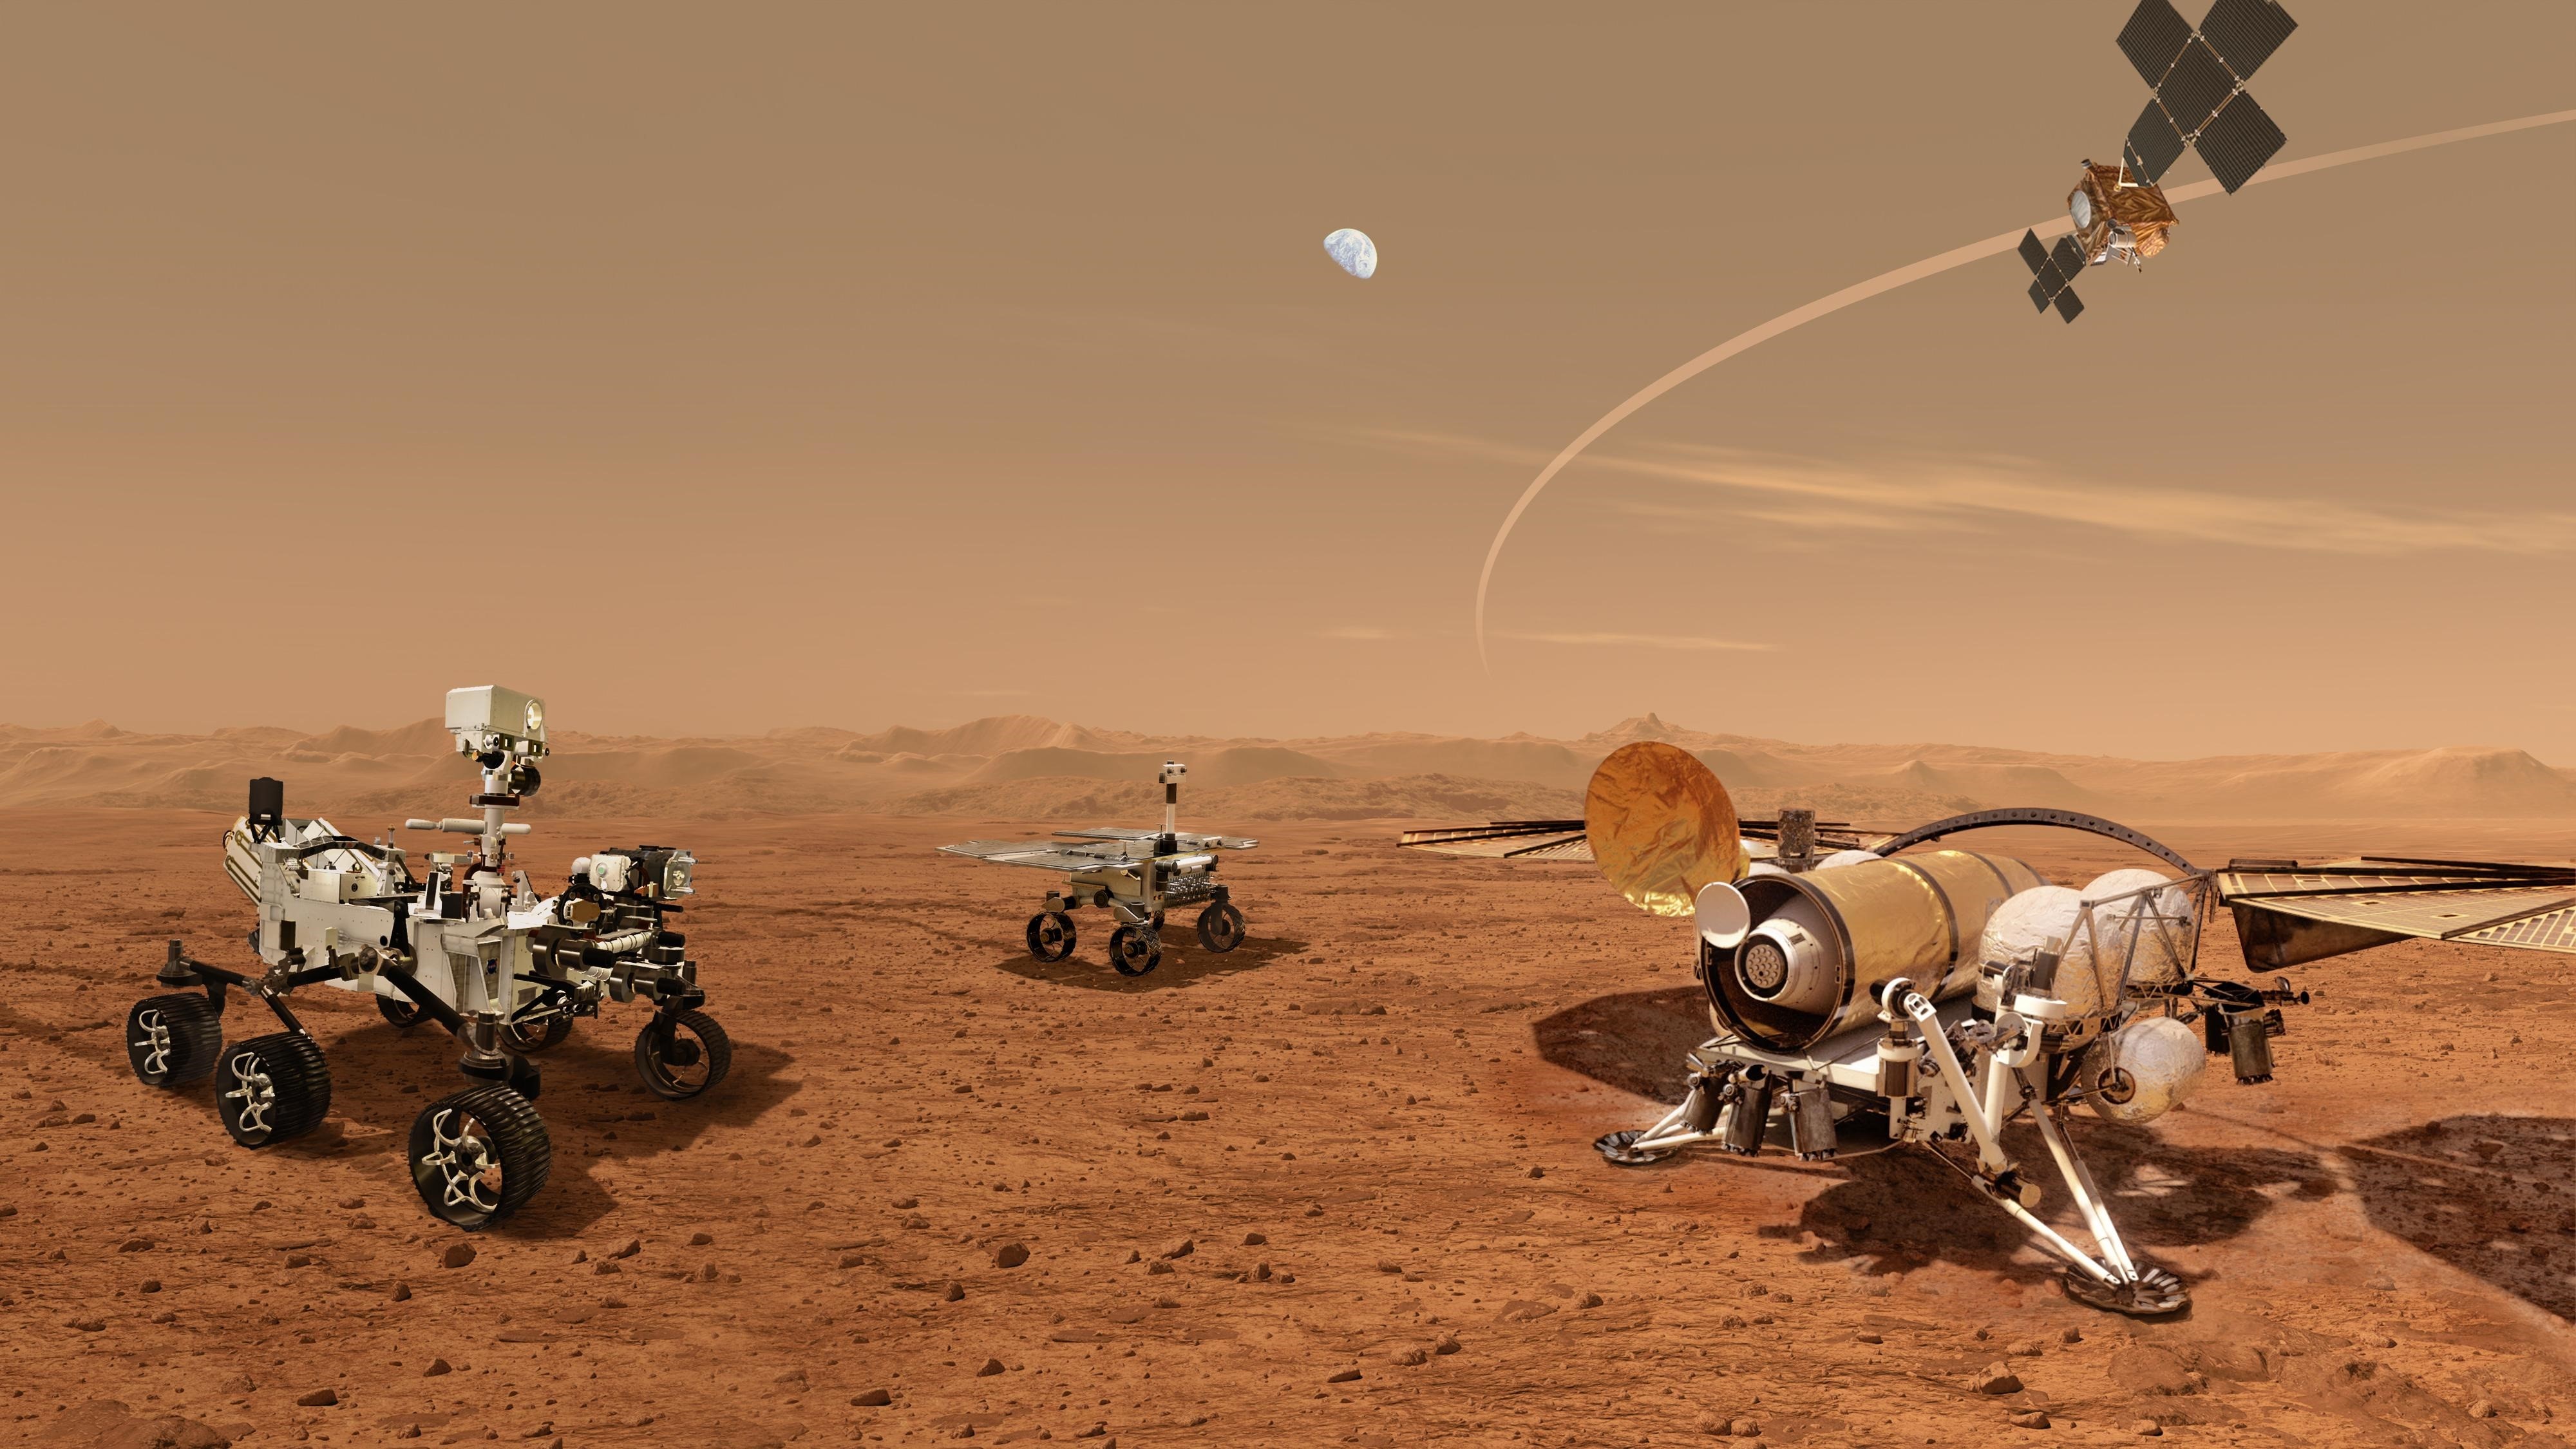 Conceptos de robots que sacarán en el futuro las muestras de Marte recogidas por el rover Perseverance

La NASA ha difundido el aspecto de un conjunto de futuros robots que trabajan juntos para transportar muestras de la superficie de Marte recolectadas por el rover Mars Perseverance de la NASA